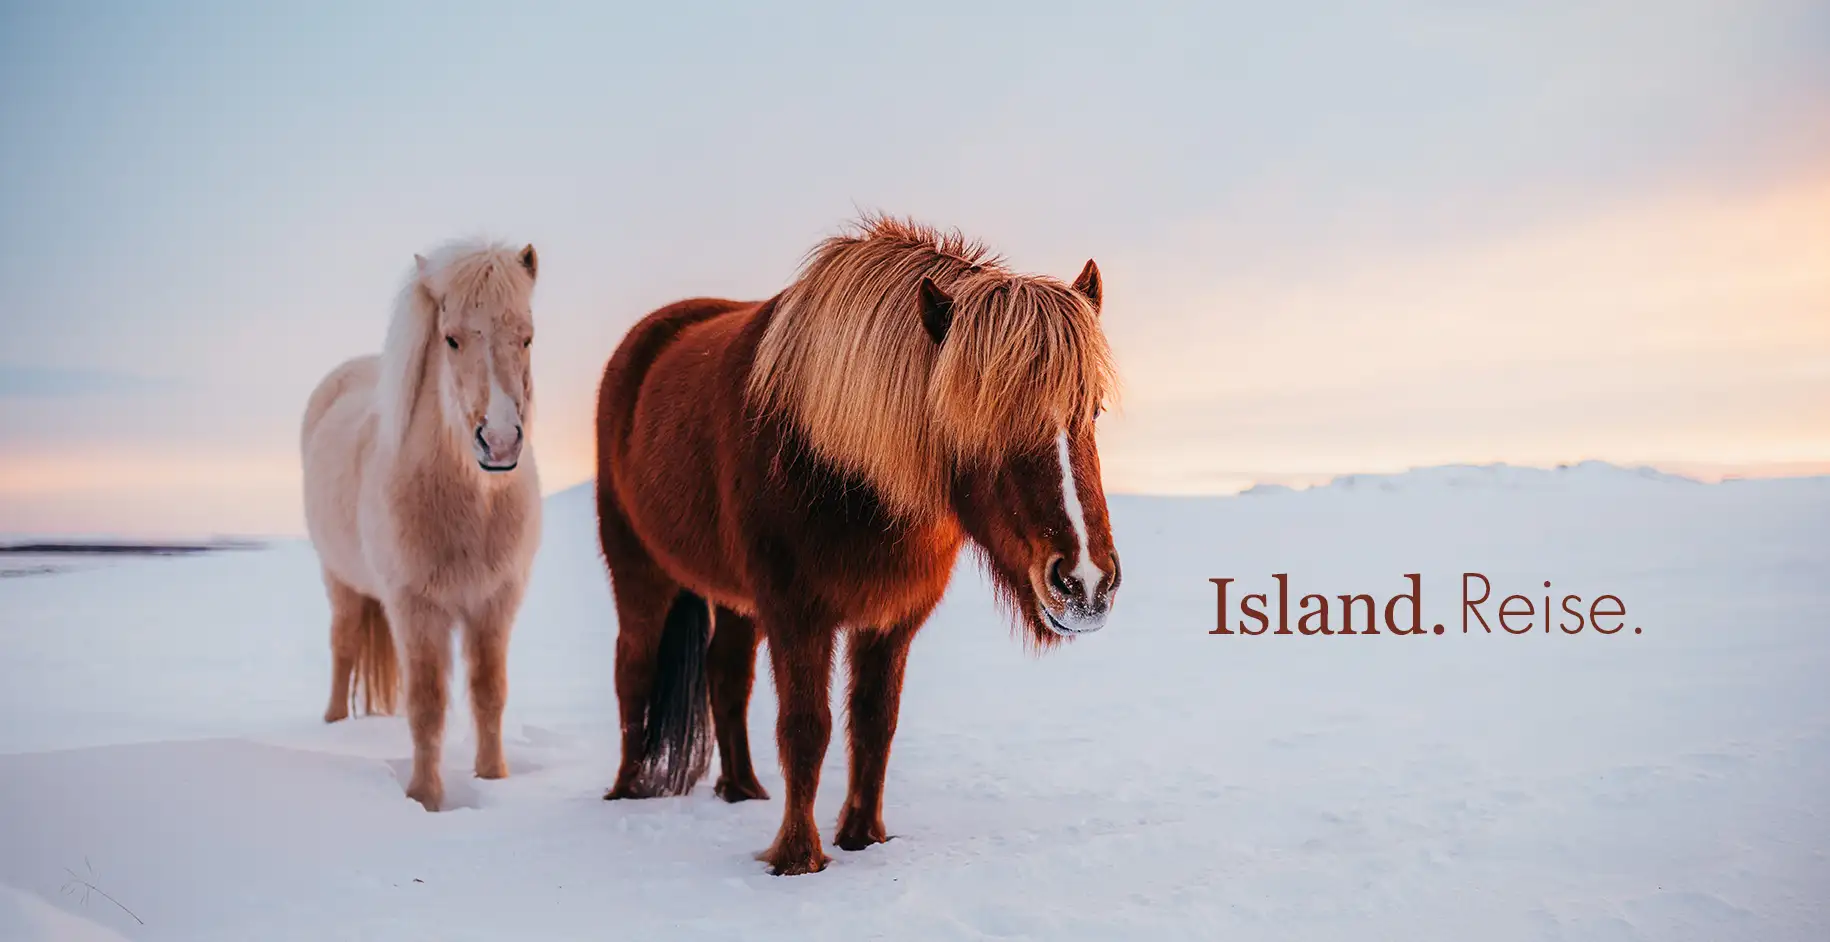 cover-island-erfahrungsbericht-reisebericht-reisen-mit-kindern-iceland